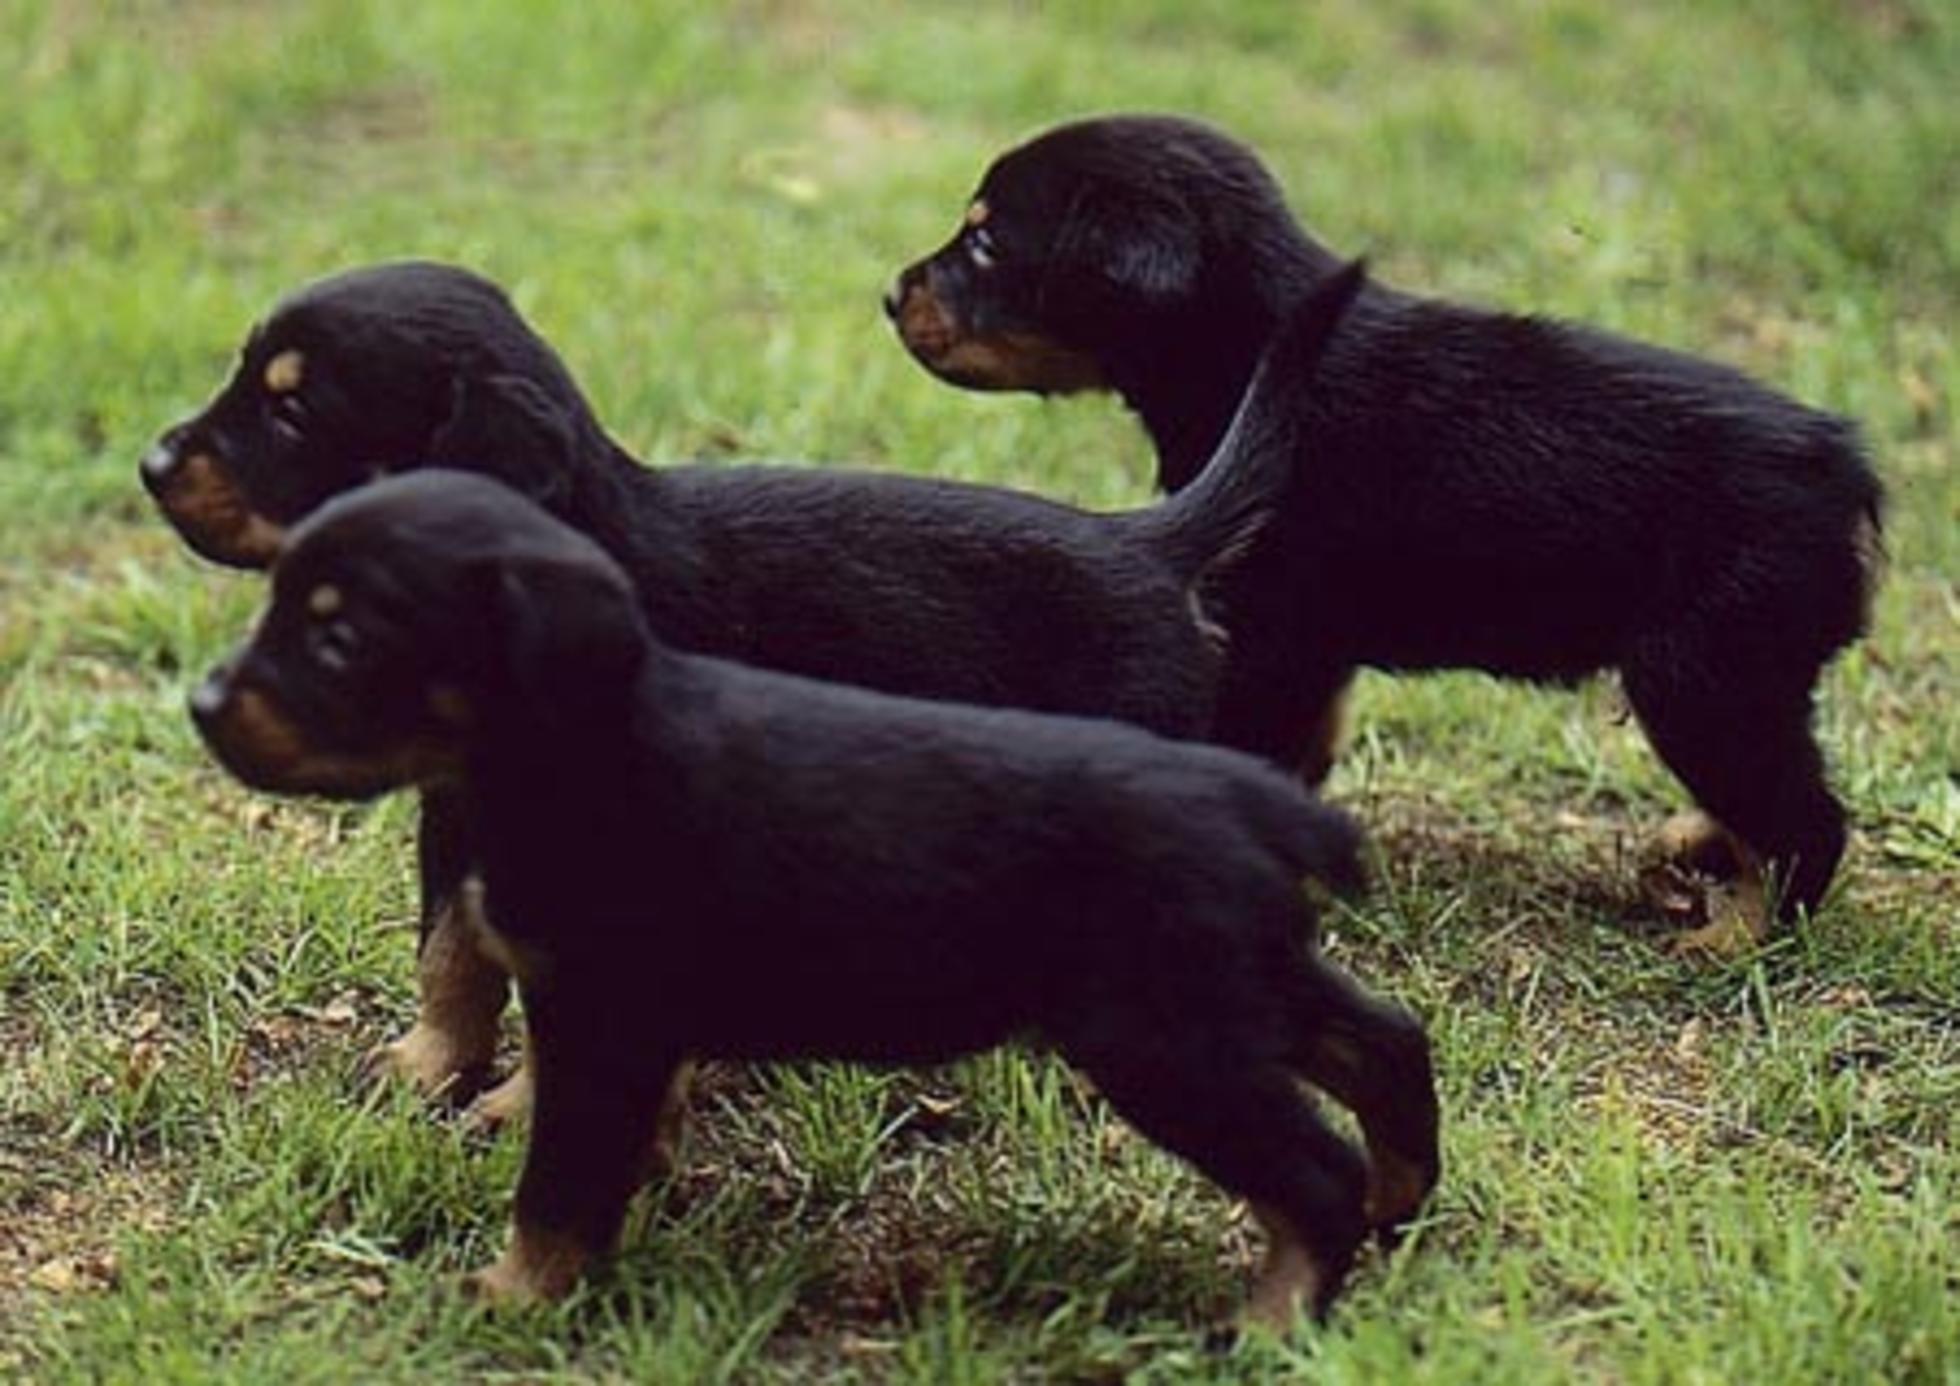 Schweizerischer Niederlaufhund Puppies: Schweizerischer Smalandsstovare Puppies Breed